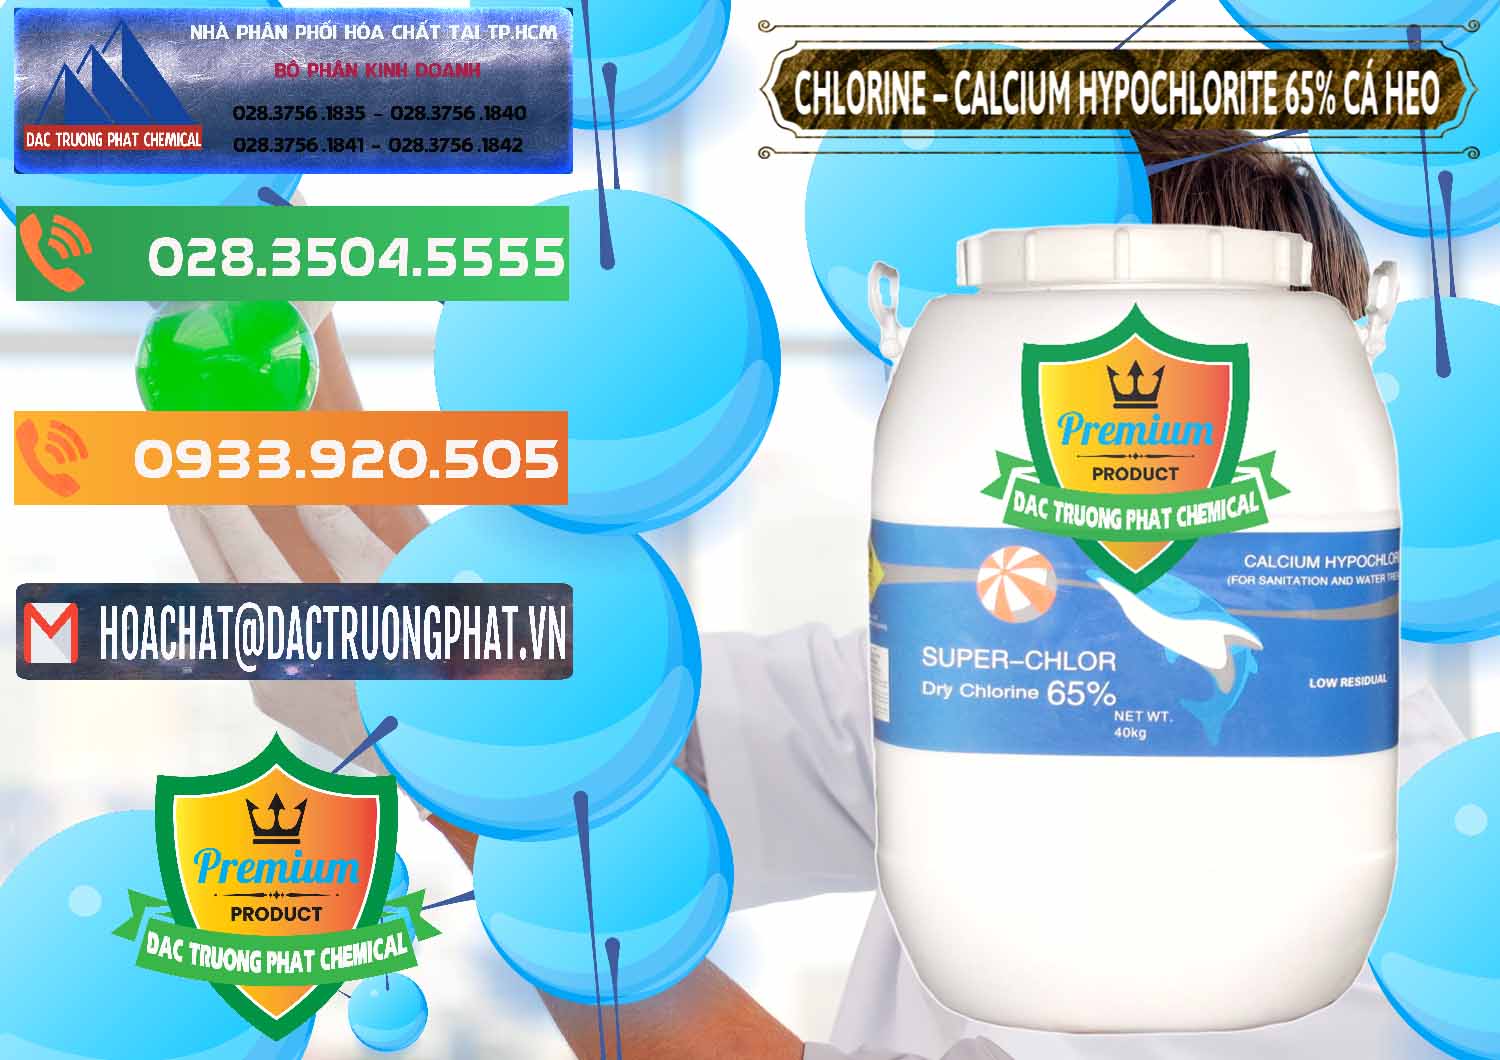 Công ty kinh doanh và bán Clorin - Chlorine Cá Heo 65% Trung Quốc China - 0053 - Nơi chuyên cung cấp ( bán ) hóa chất tại TP.HCM - hoachatxulynuoc.com.vn